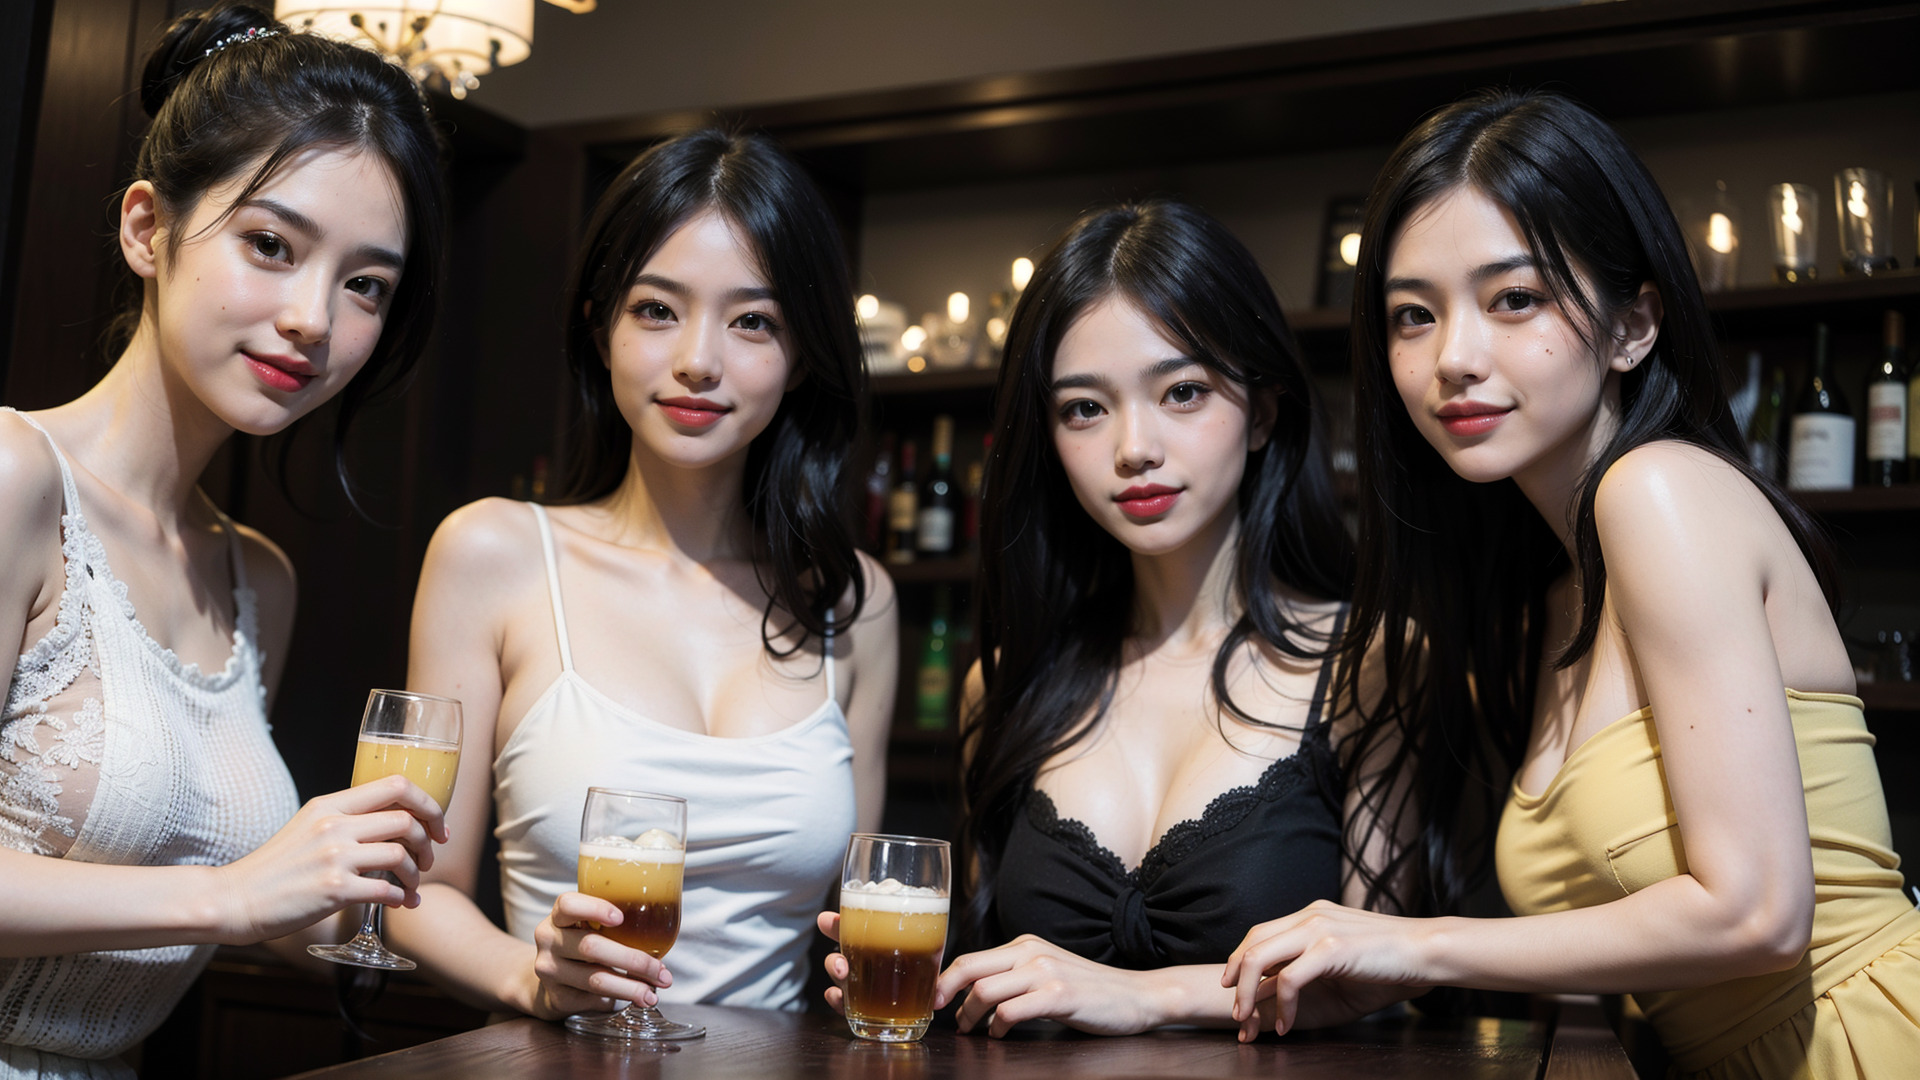 バーで女子会を楽しむ4人の女性